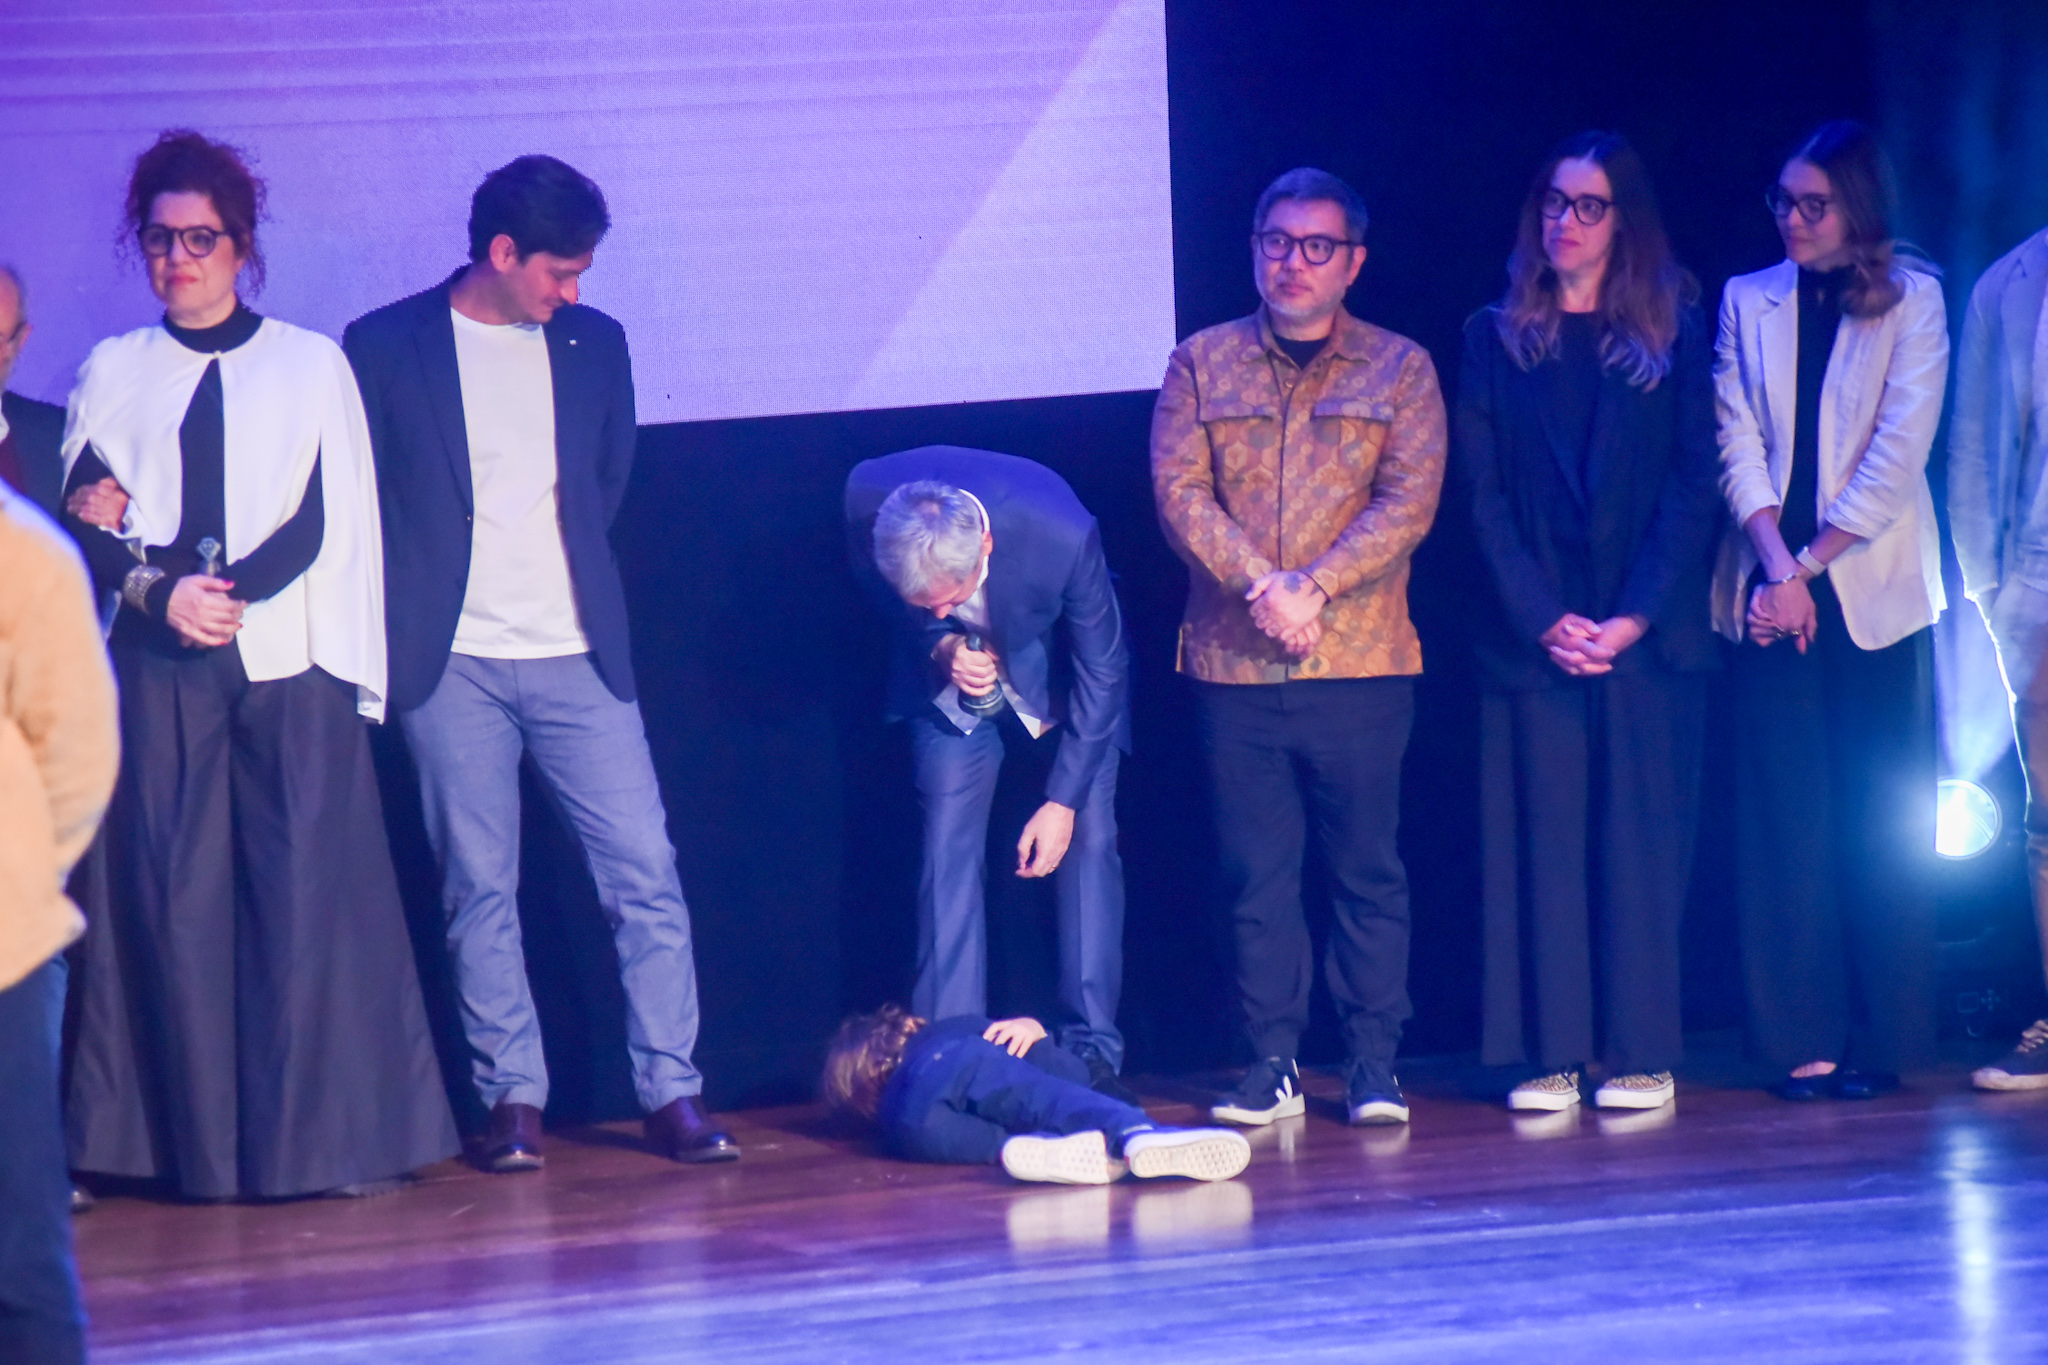 Filho do discretíssimo Serginho Groisman invade palco de premiação e protagoniza cenas hilárias - AgNews/Marcelo 